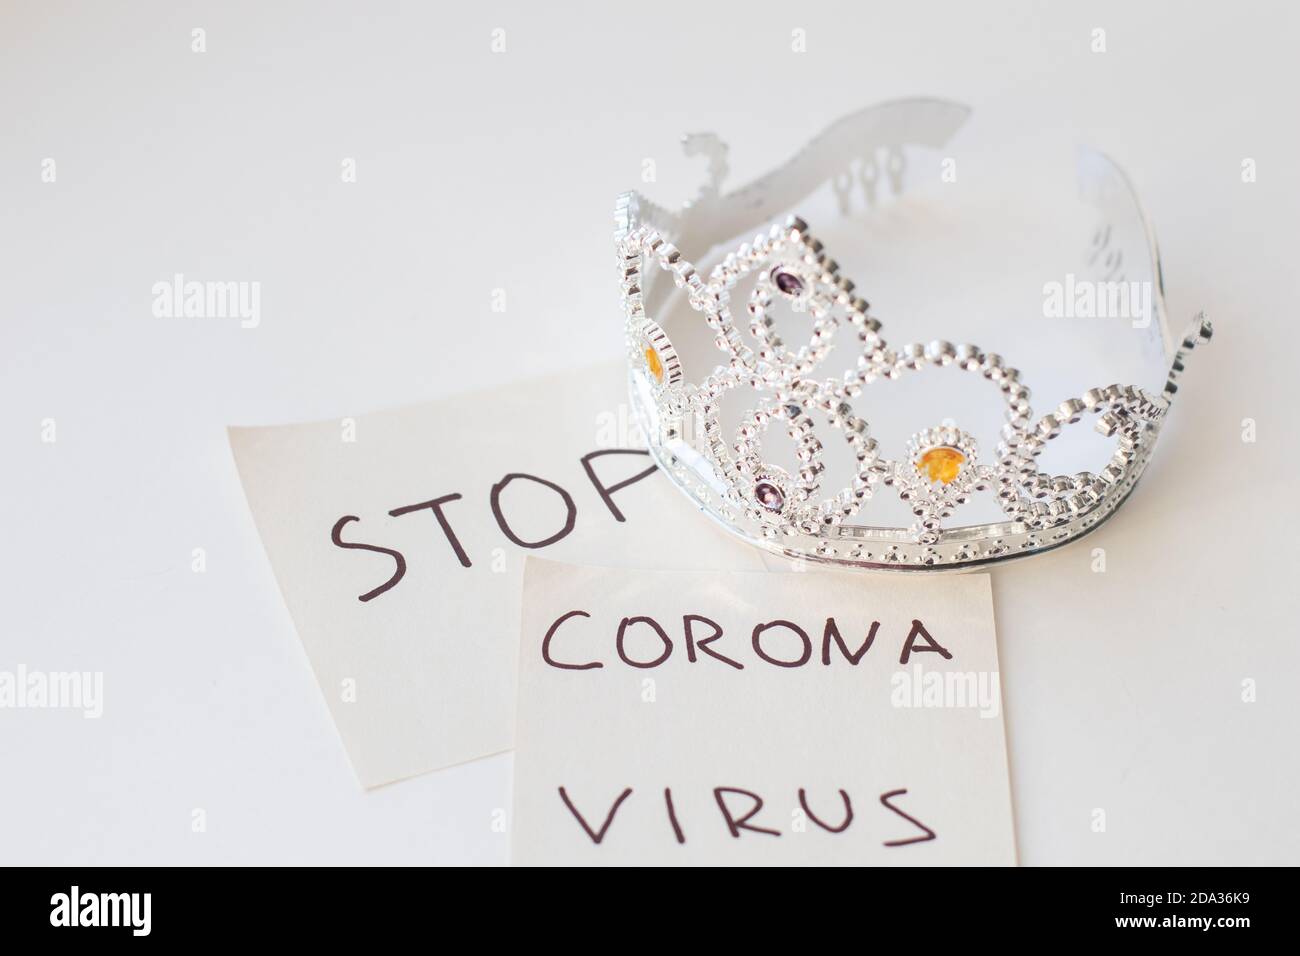 Text STOP VIRUS CORONA y modelo de corona. Concepto de coronavirus. COVID-19. Nuevo coronavirus 2019-nCoV Foto de stock